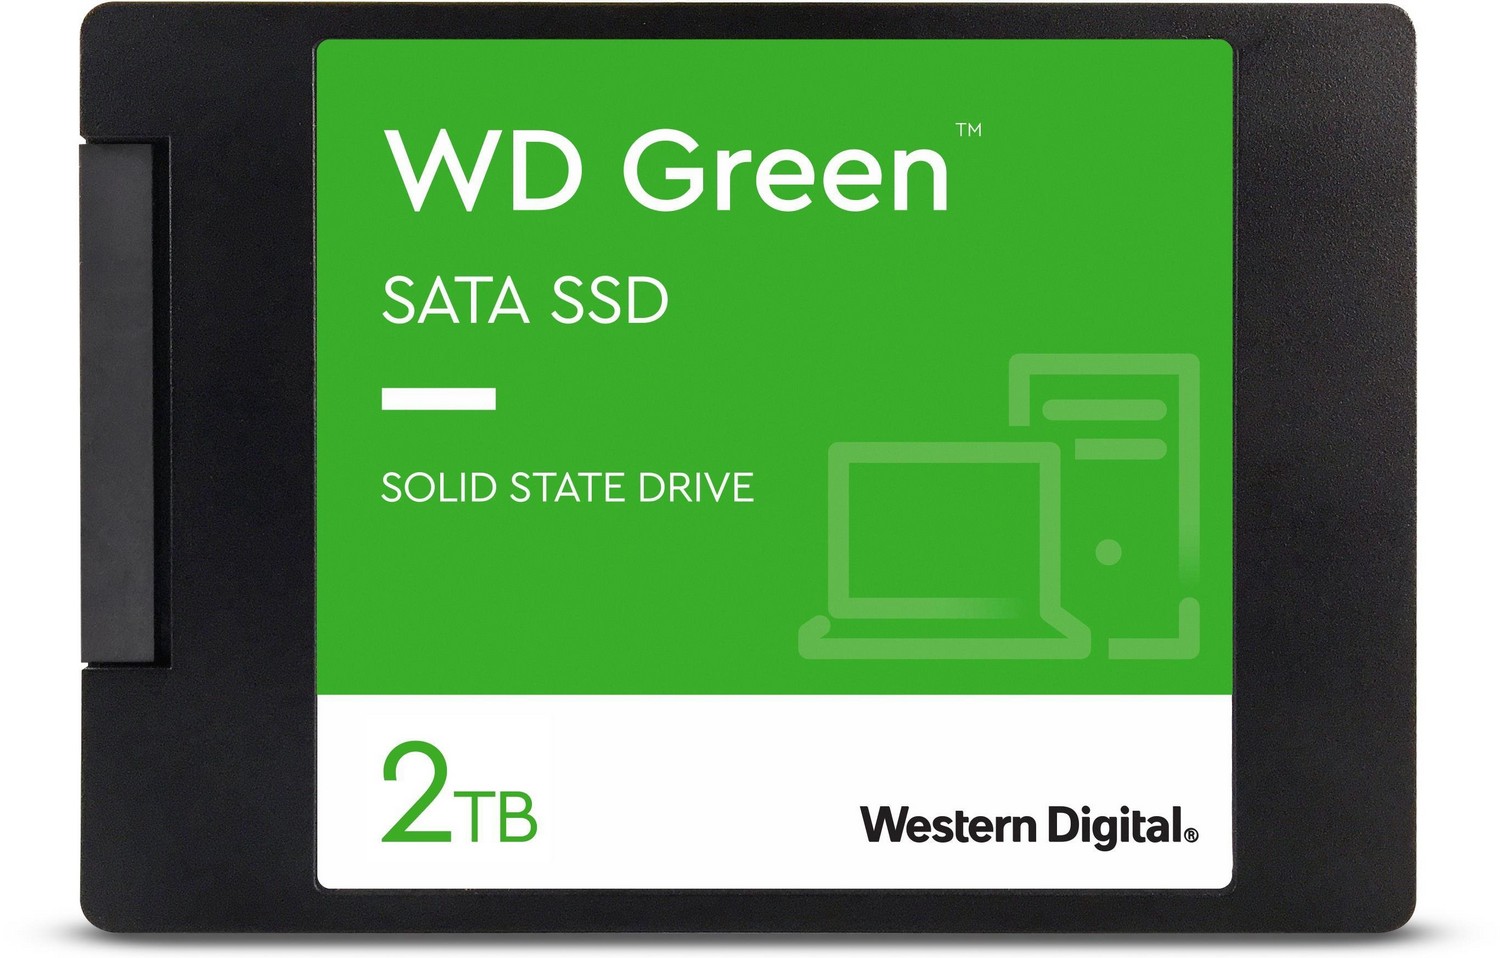 Diosca SSD - WD Green SSD 2TB